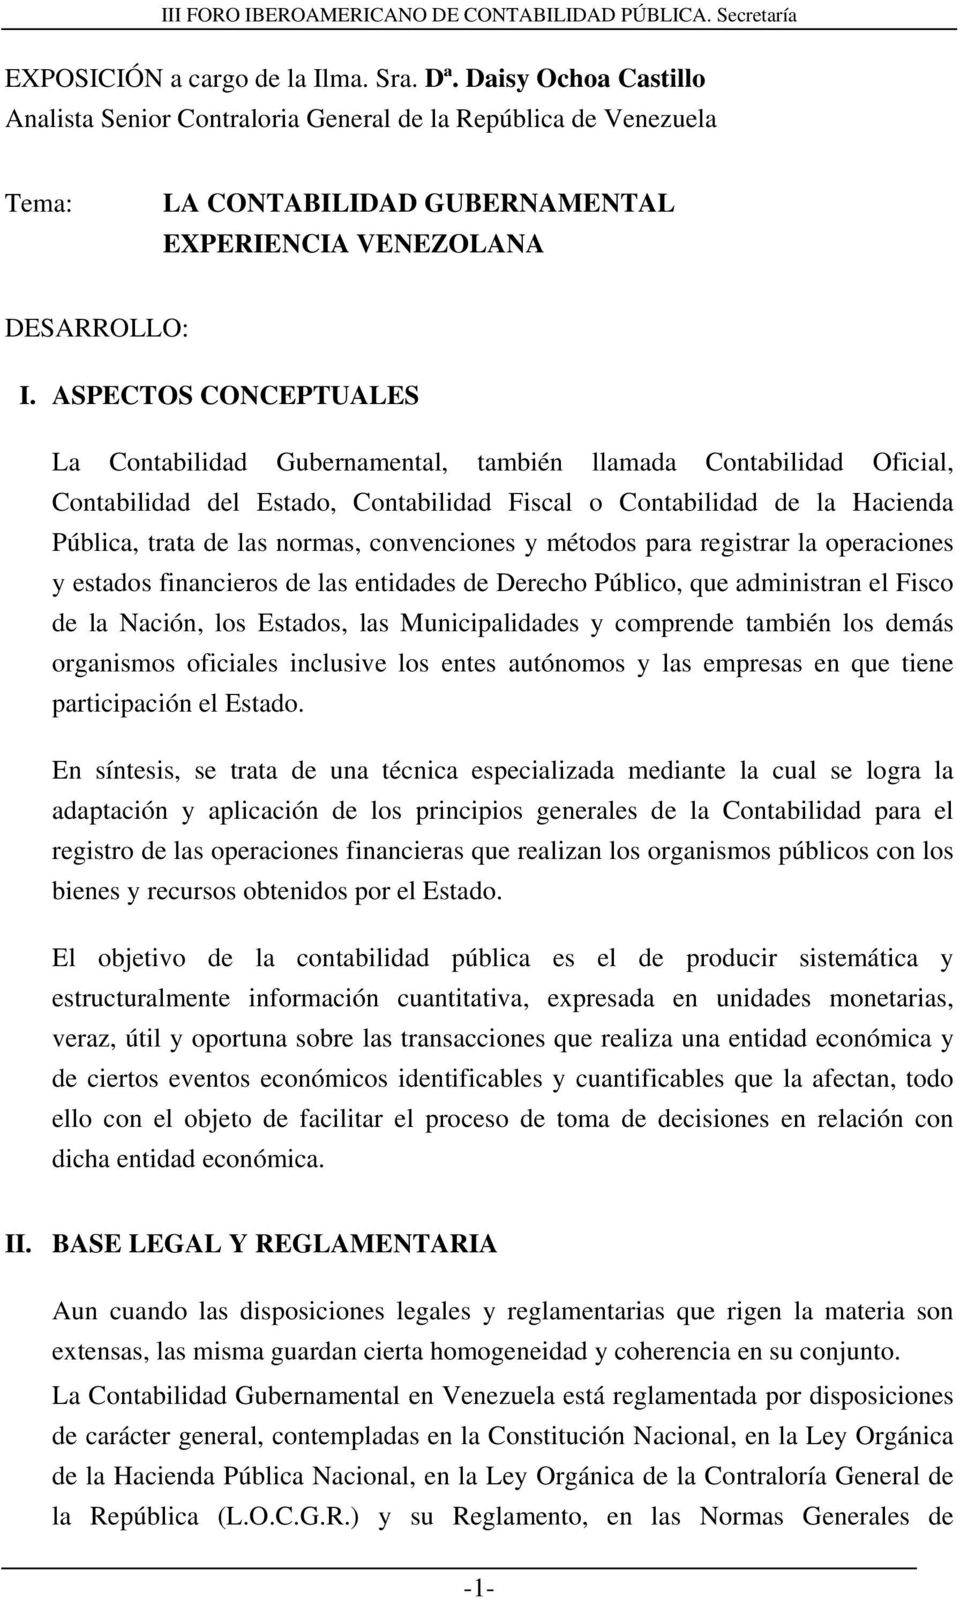 convenciones y métodos para registrar la operaciones y estados financieros de las entidades de Derecho Público, que administran el Fisco de la Nación, los Estados, las Municipalidades y comprende